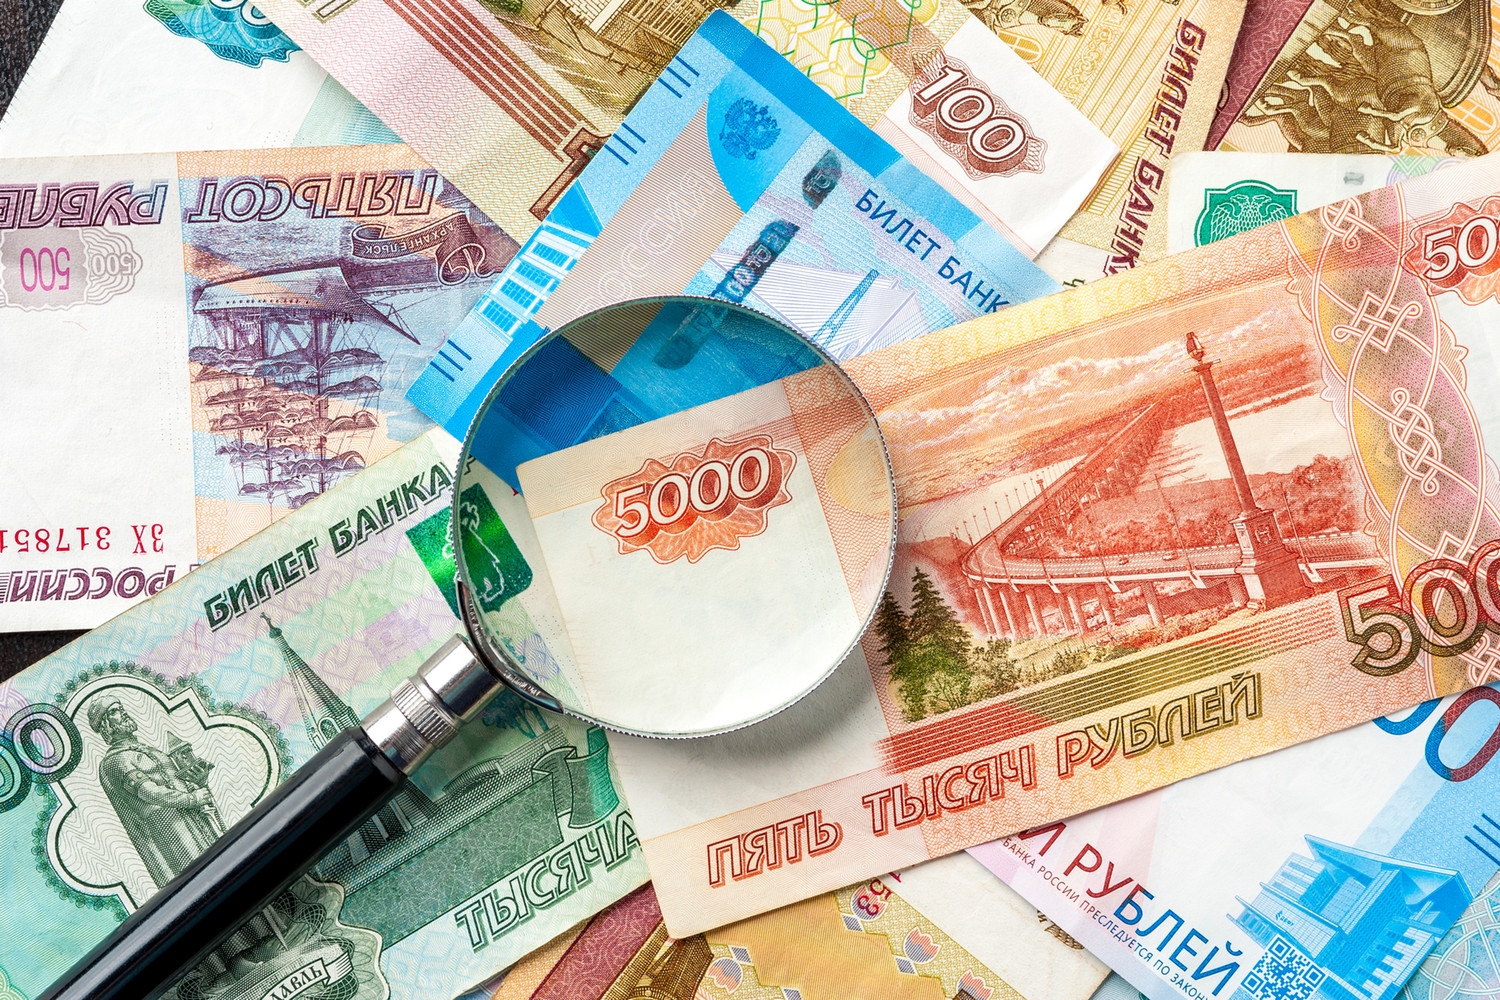 Банки предоставили участникам СВО и членам их семей кредитные каникулы на 72,4 млрд рублей